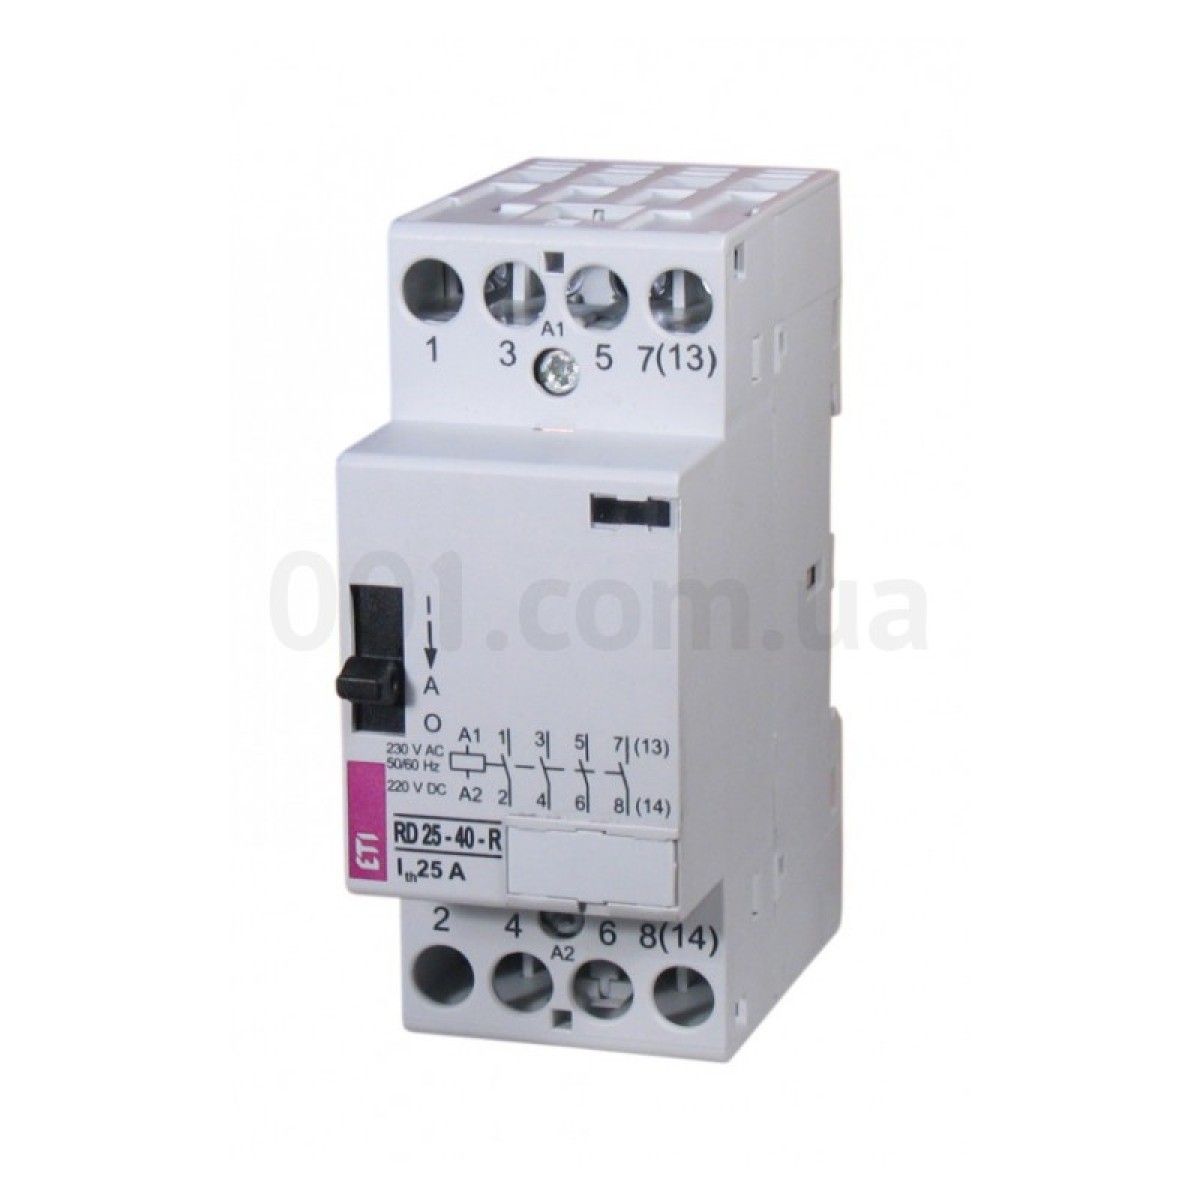 Контактор модульний RD 25-40-R 25A 230V AC/DC 4NO з ручним керуванням, ETI 256_256.jpg